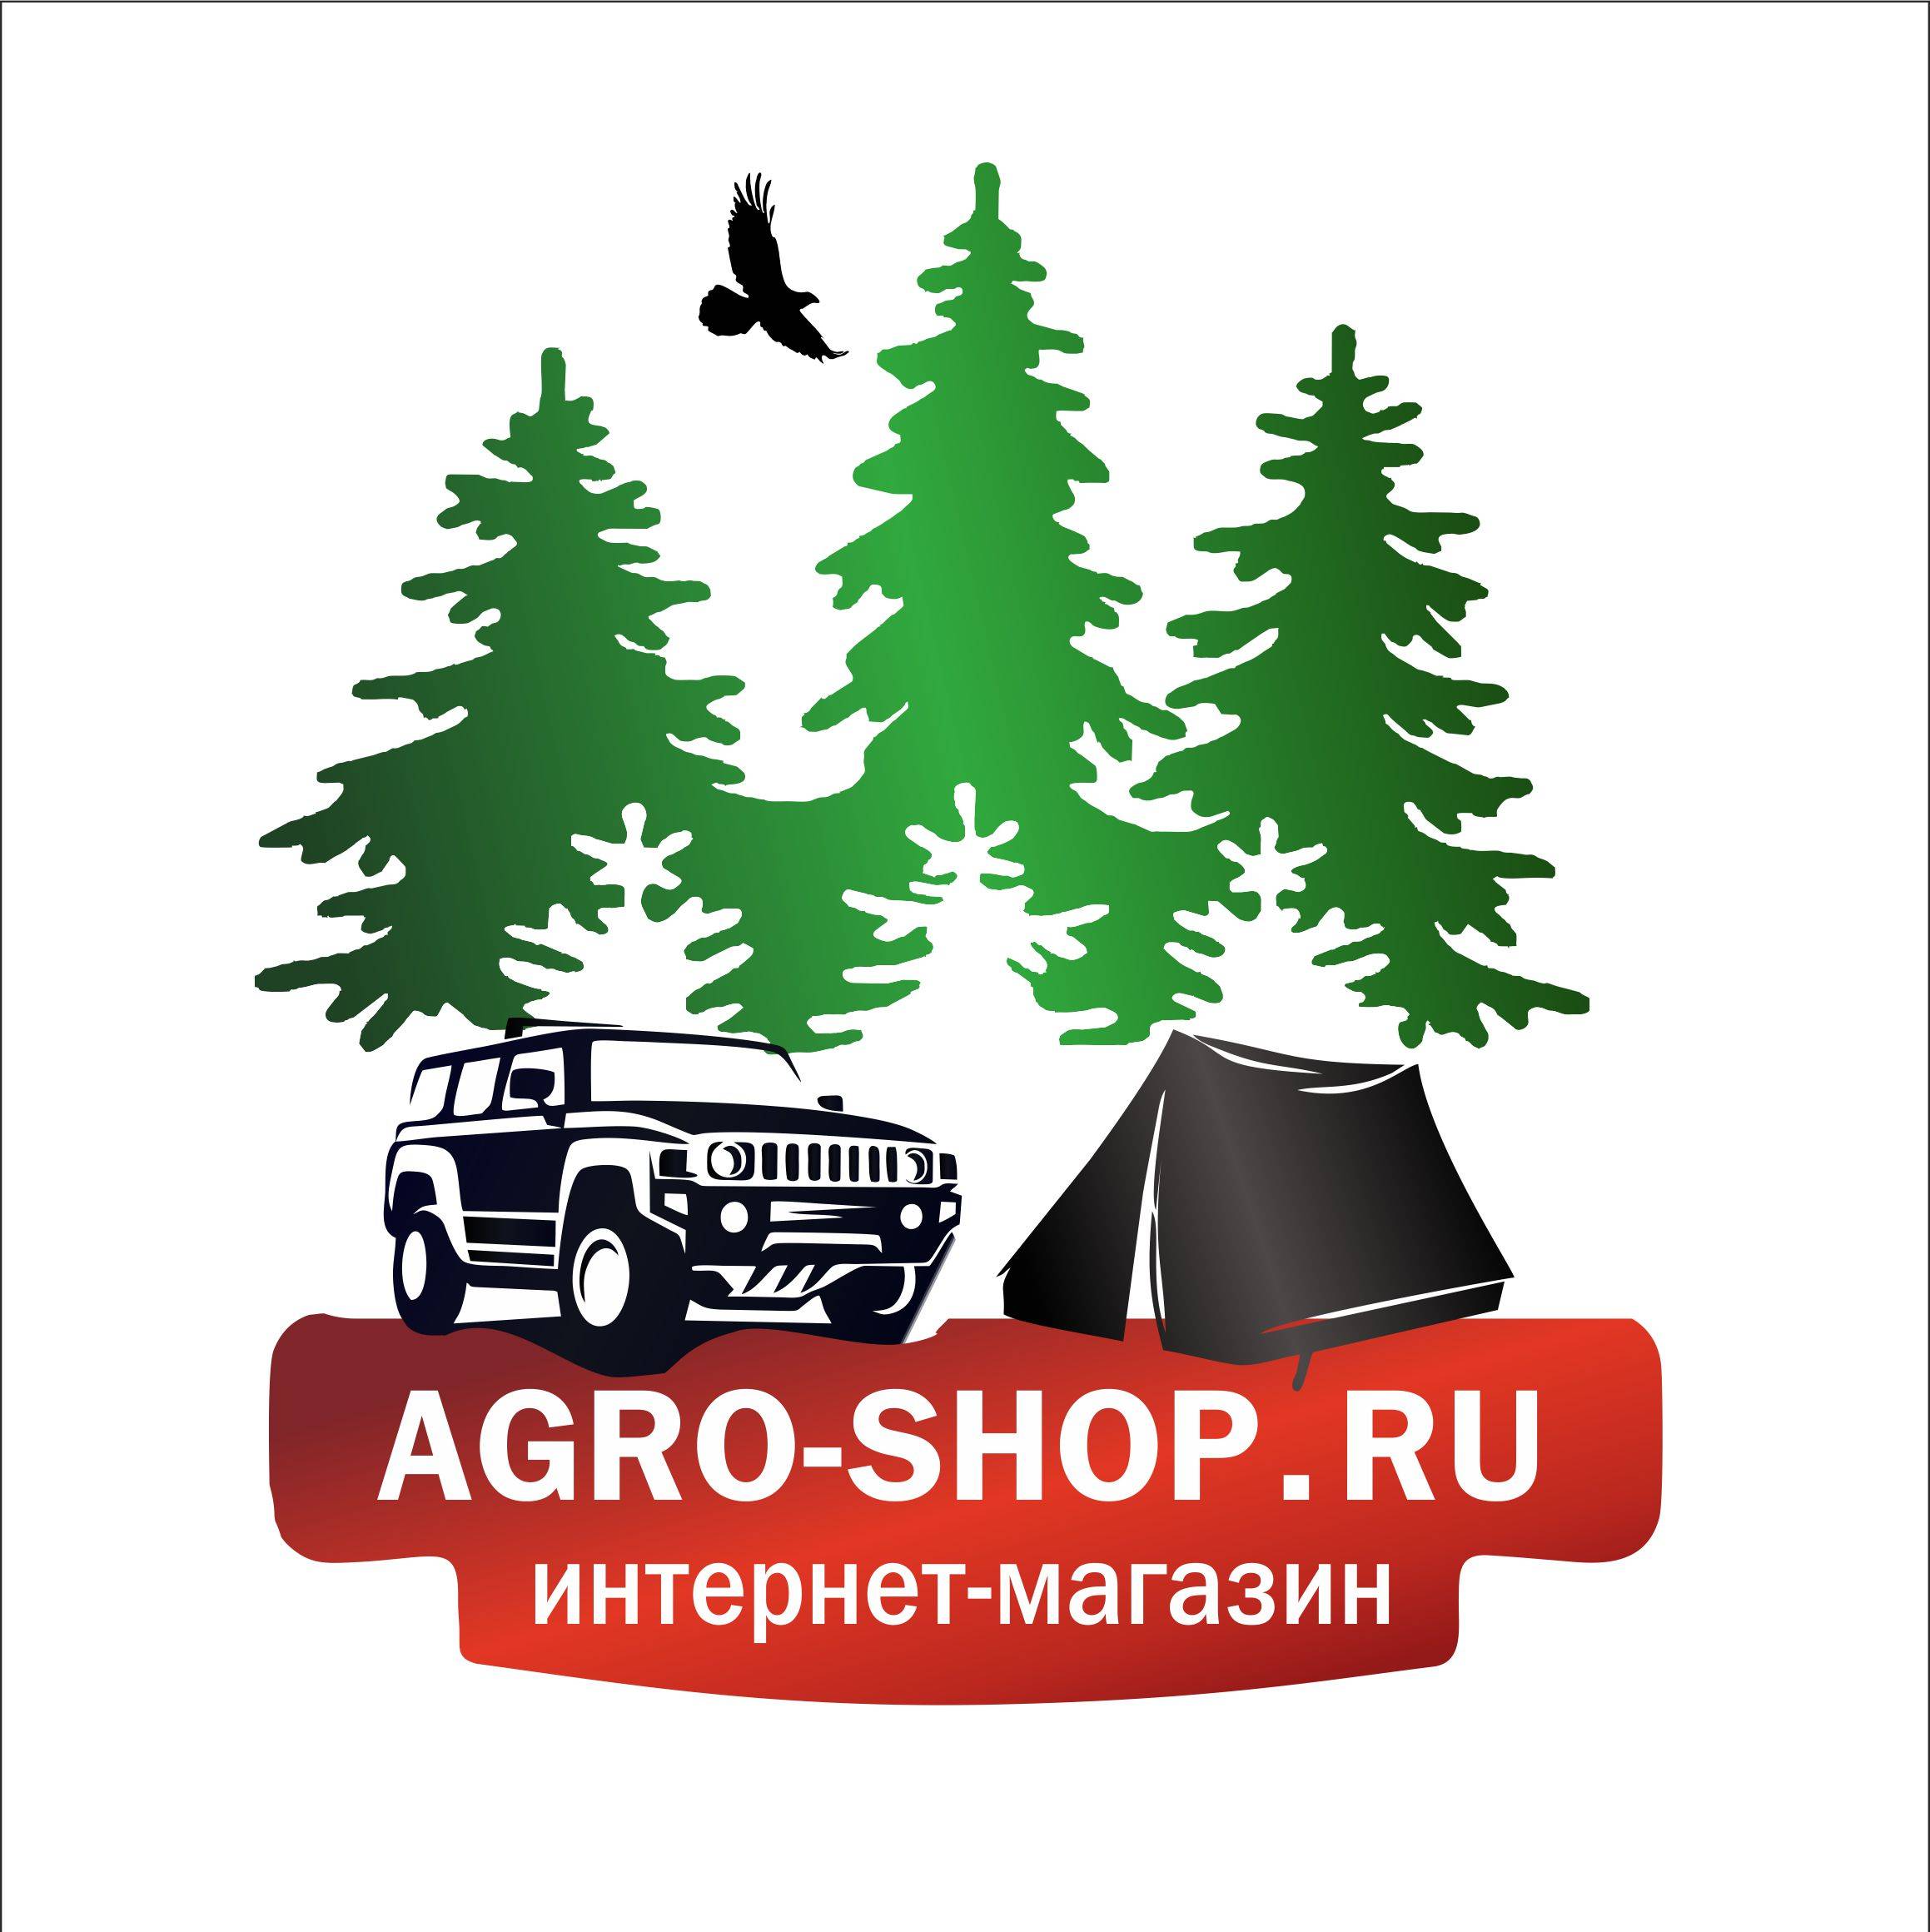 Иконка канала AGROSHOP сельхоззапчасти, туризм, активный отдых